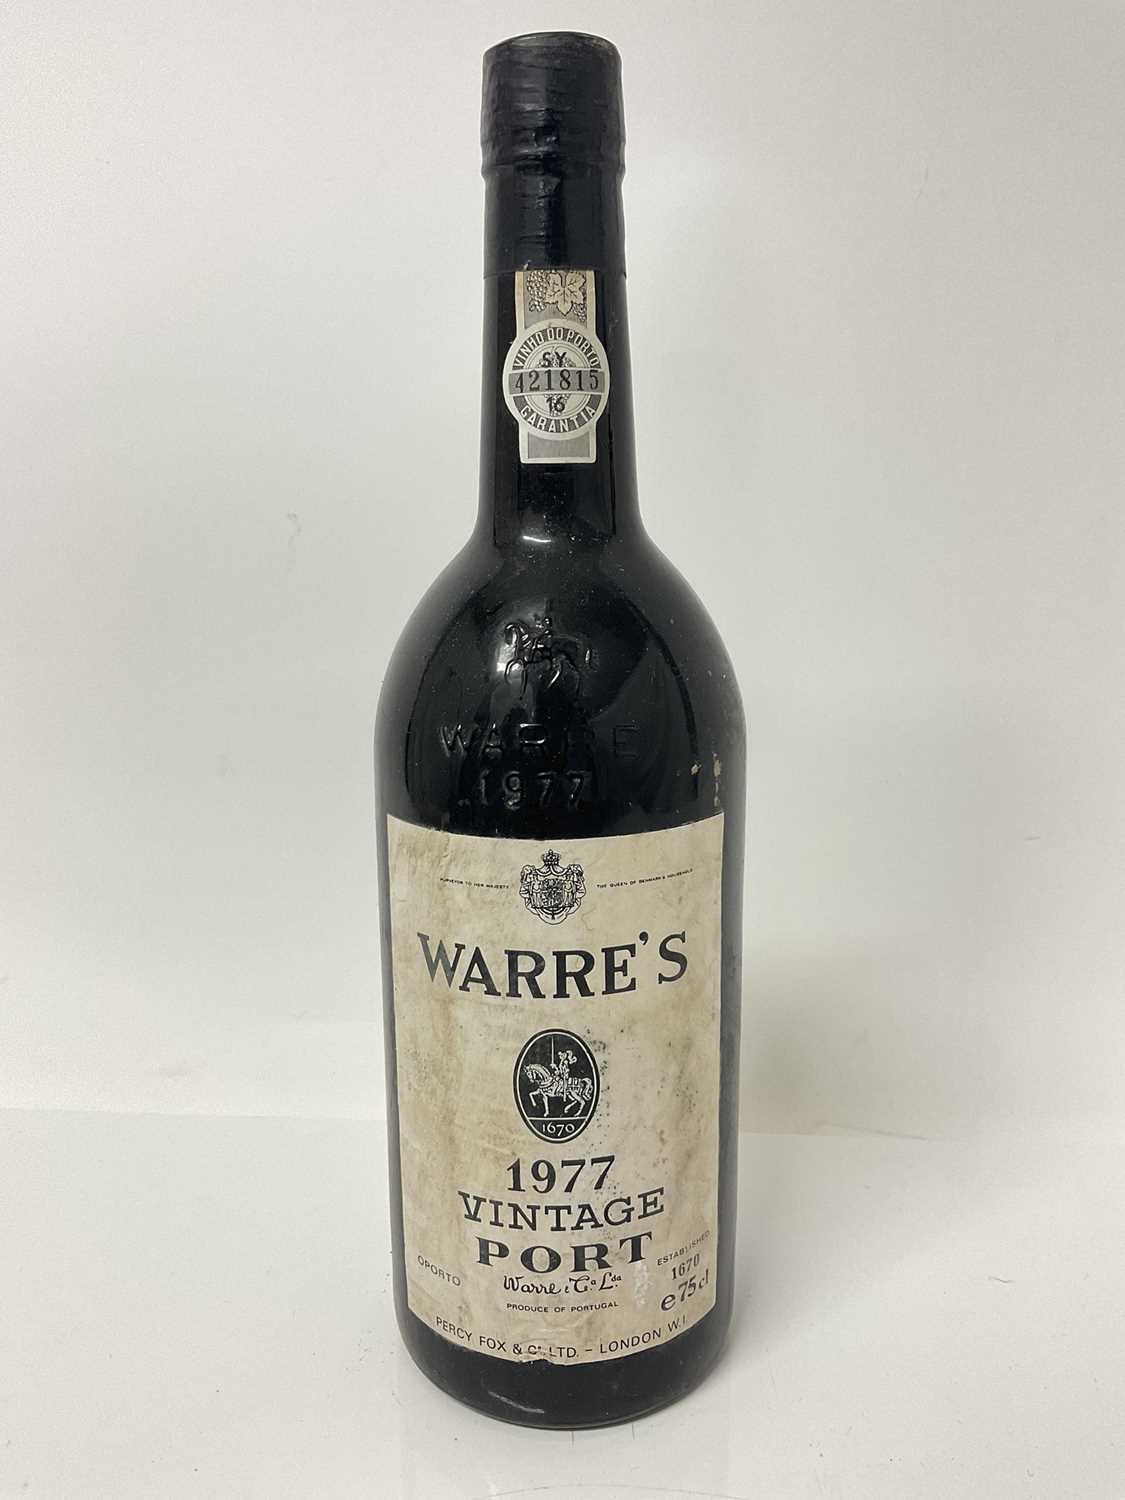 Lot 7 - Port - one bottle, Warre's 1977